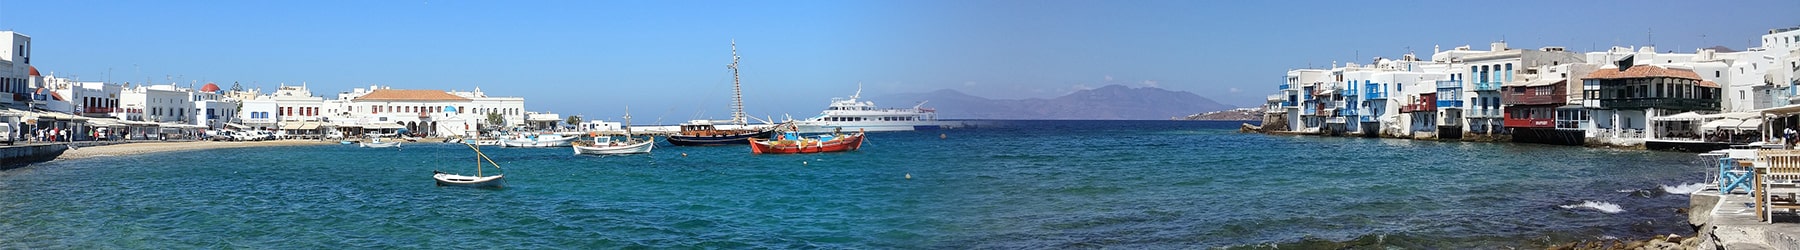 Escape to Mykonos and Santorini - 6 Nights